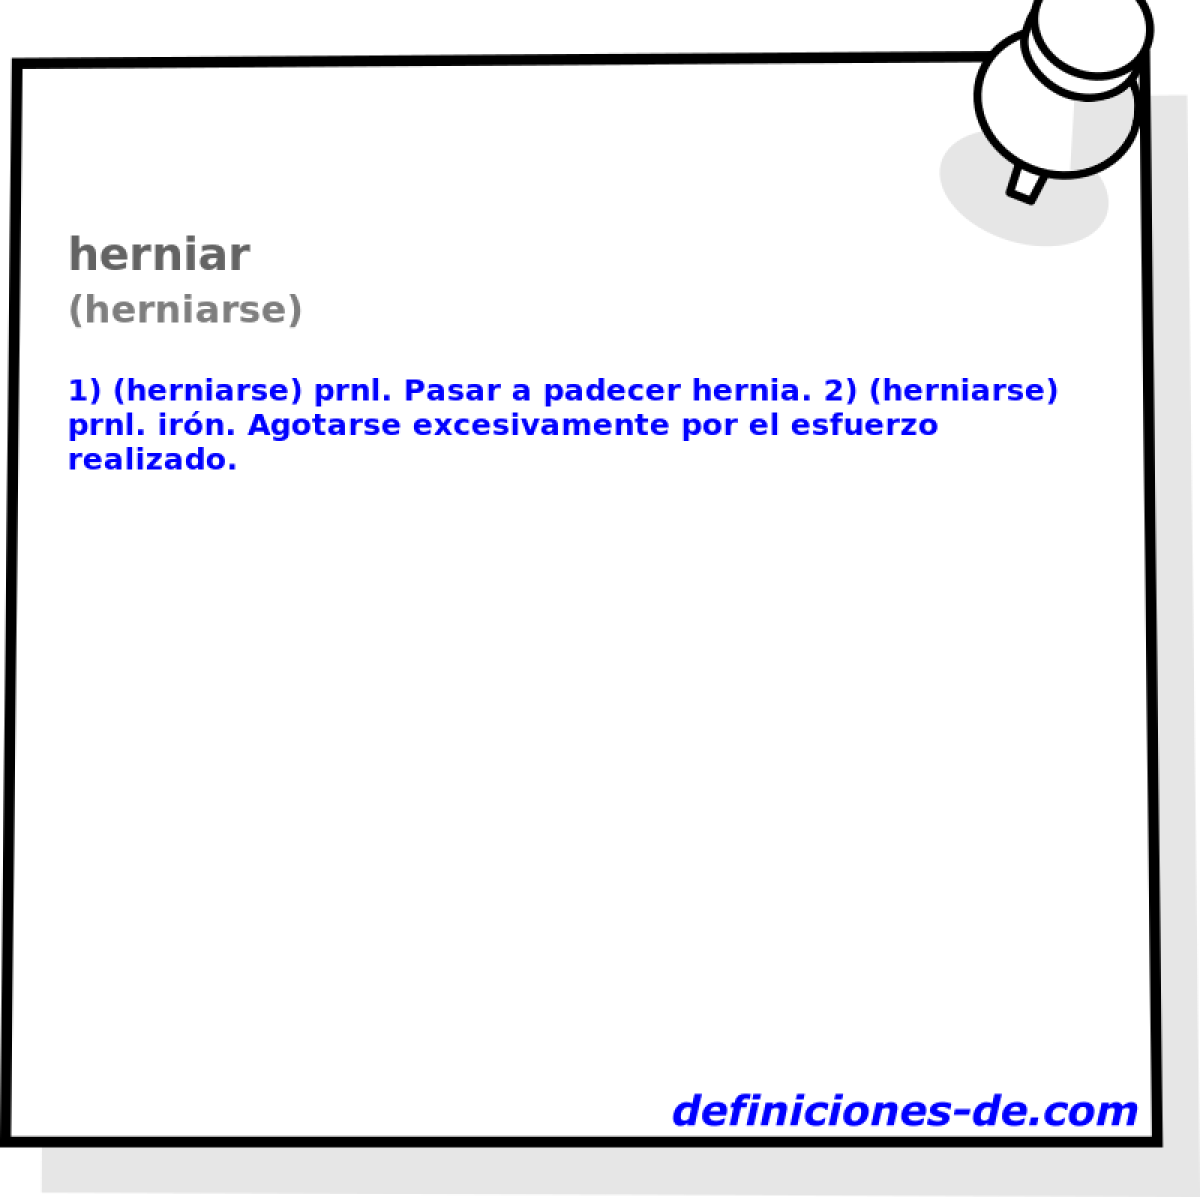 herniar (herniarse)